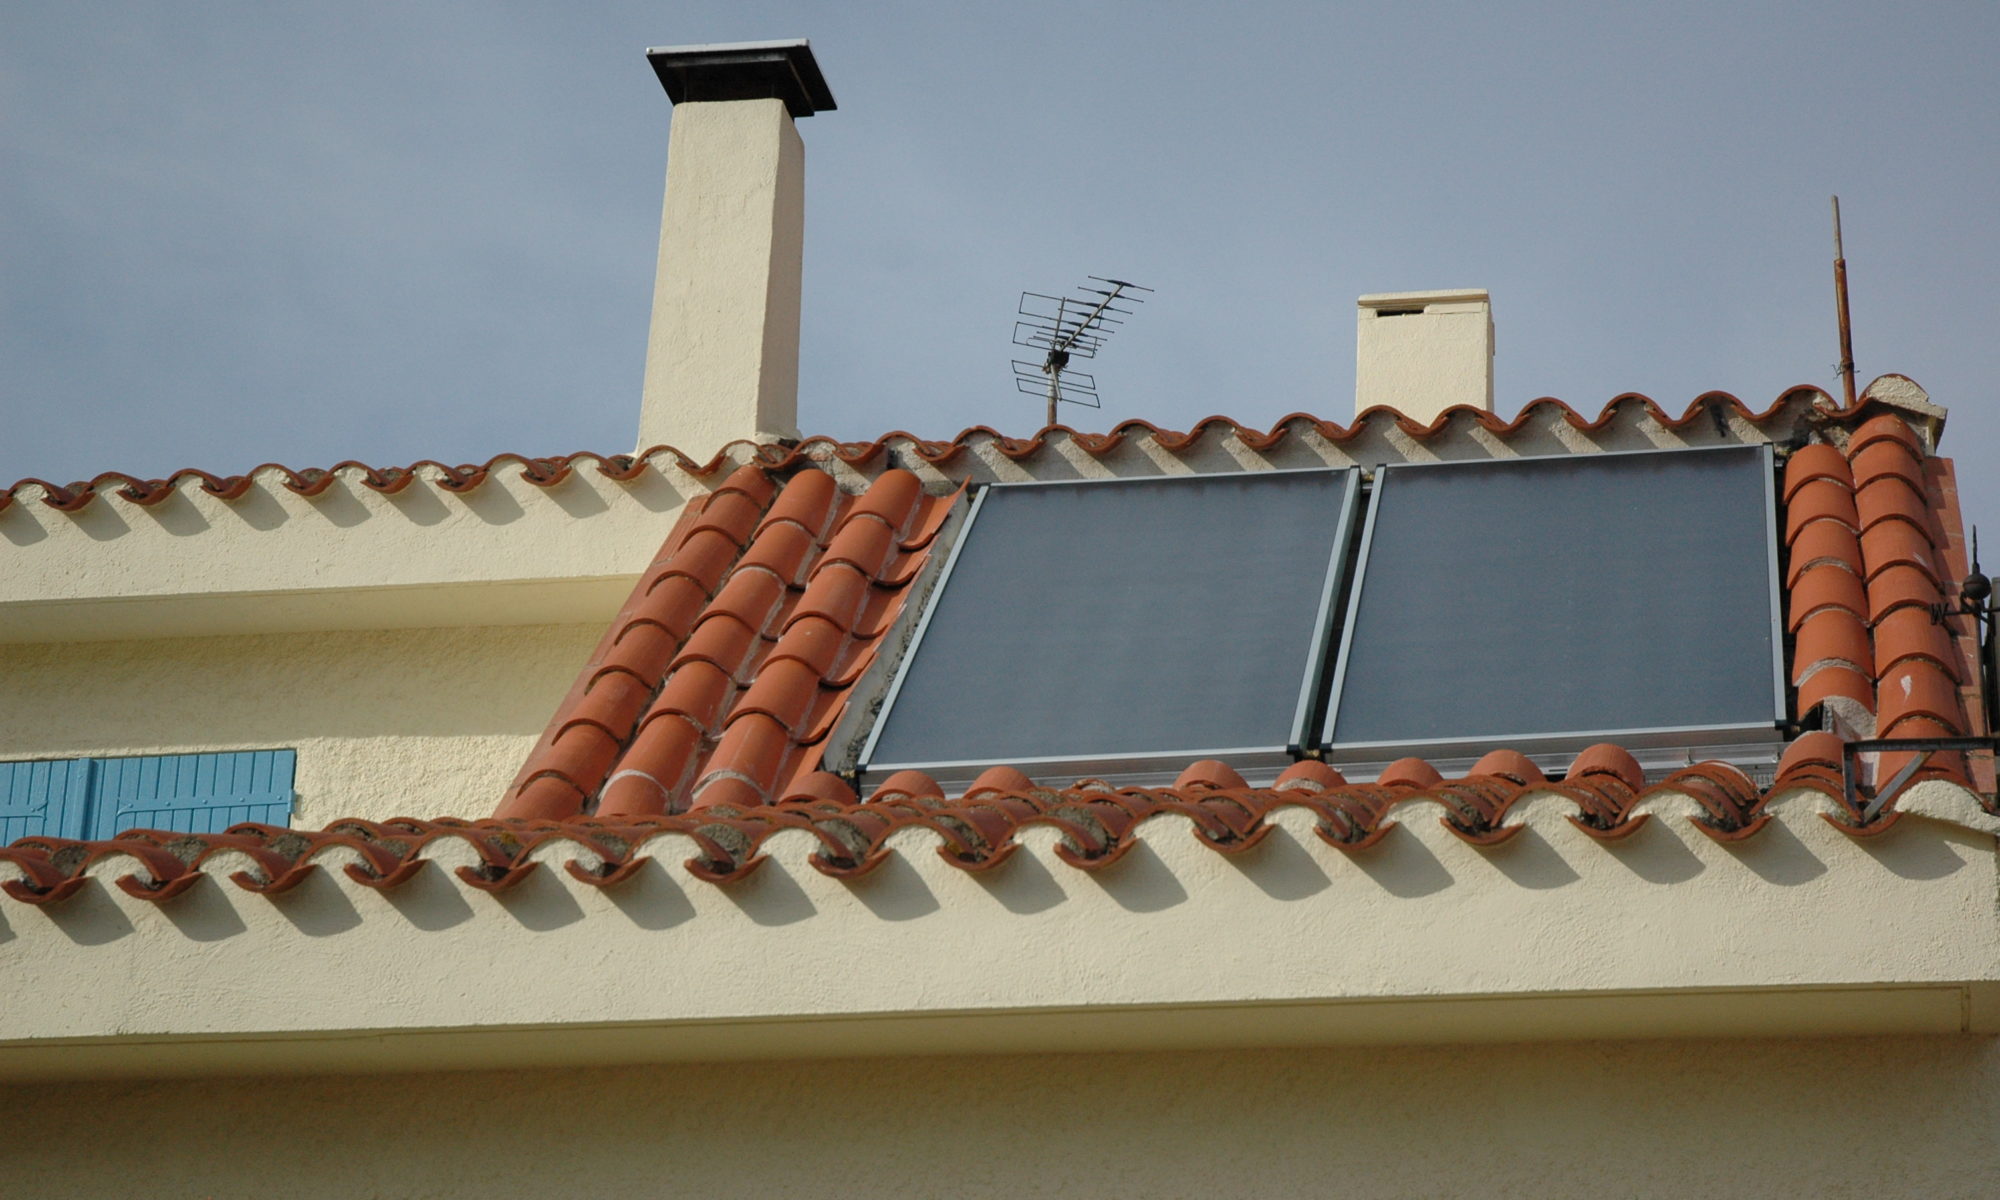 Panneaux solaires thermiques sur le toit.